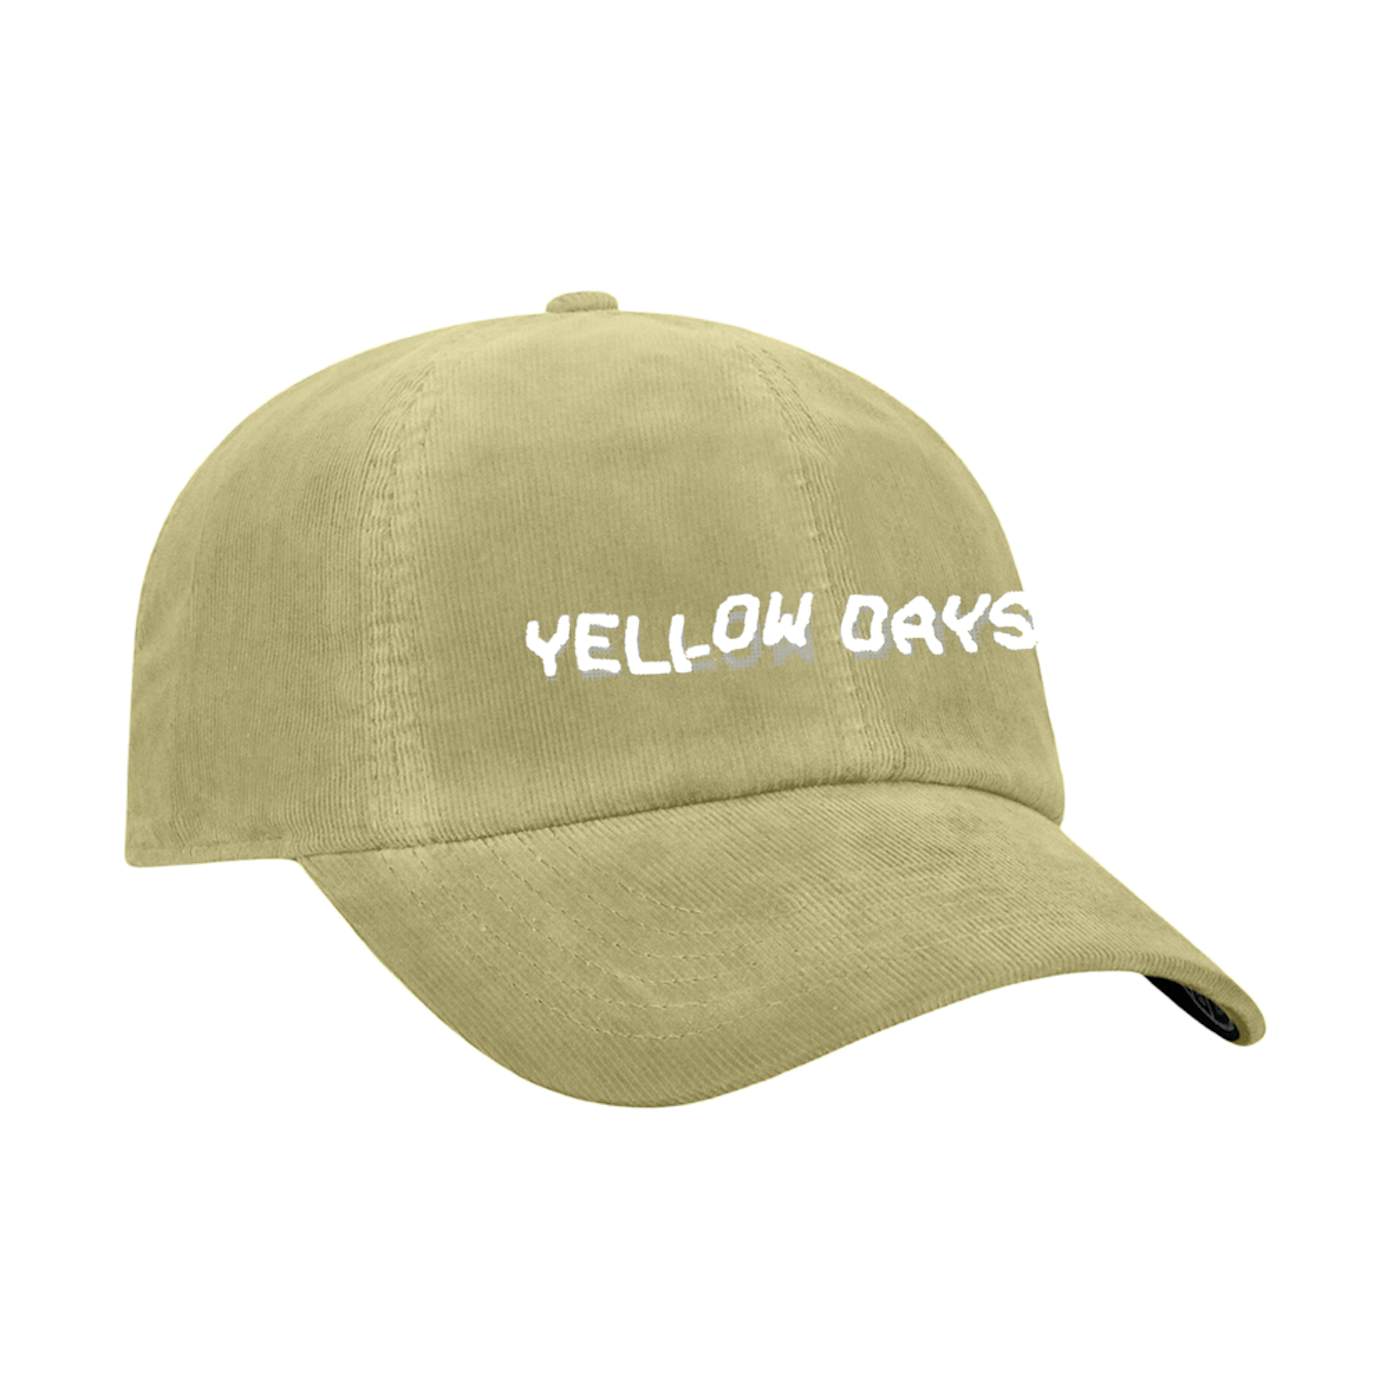 Days Shirts, Days Merch, Yellow Days Hoodies, Yellow Days Vinyl Records, Yellow Days Posters, Yellow Days Hats, Yellow Days CDs, Yellow Days Music, Yellow Days Store